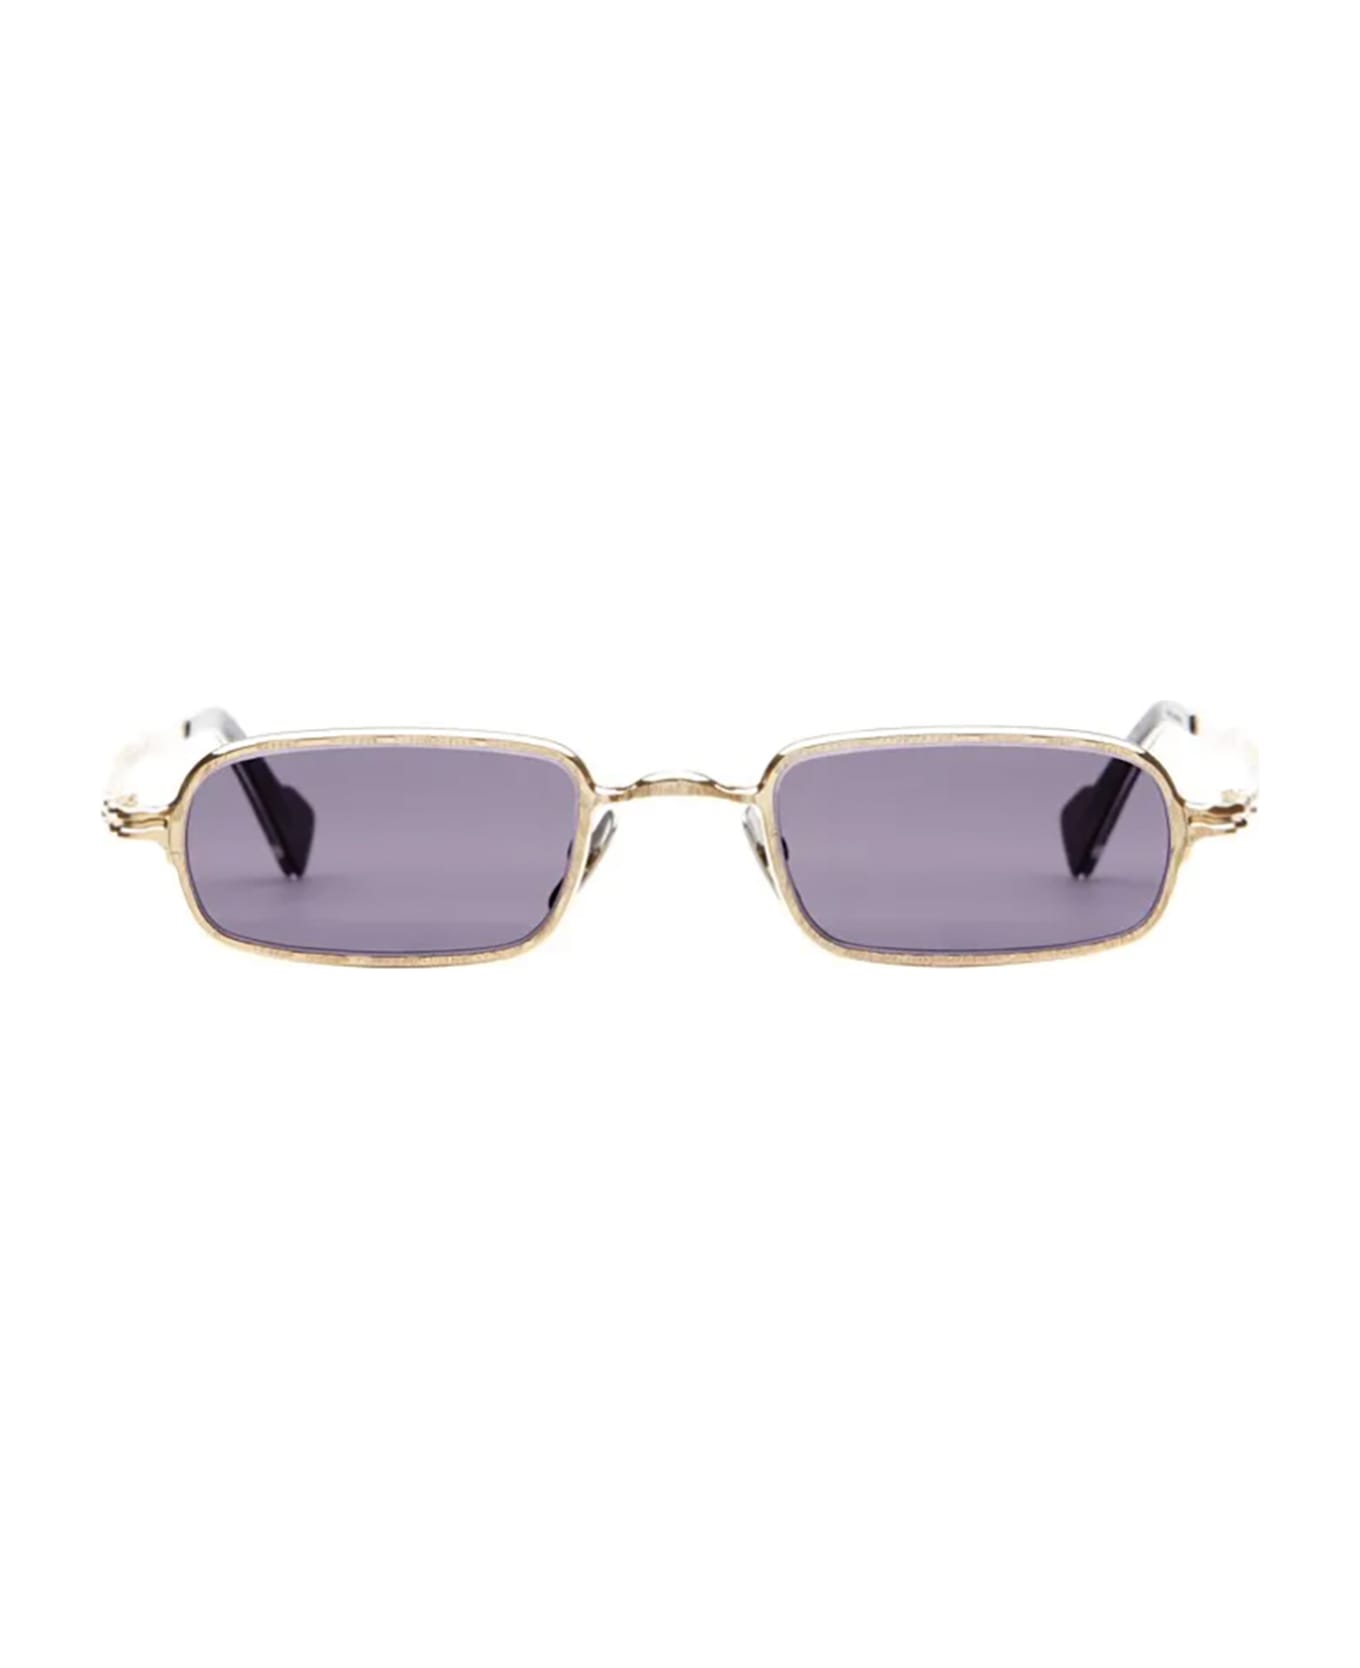 Kuboraum Z18 Sunglasses - Gg Violet サングラス